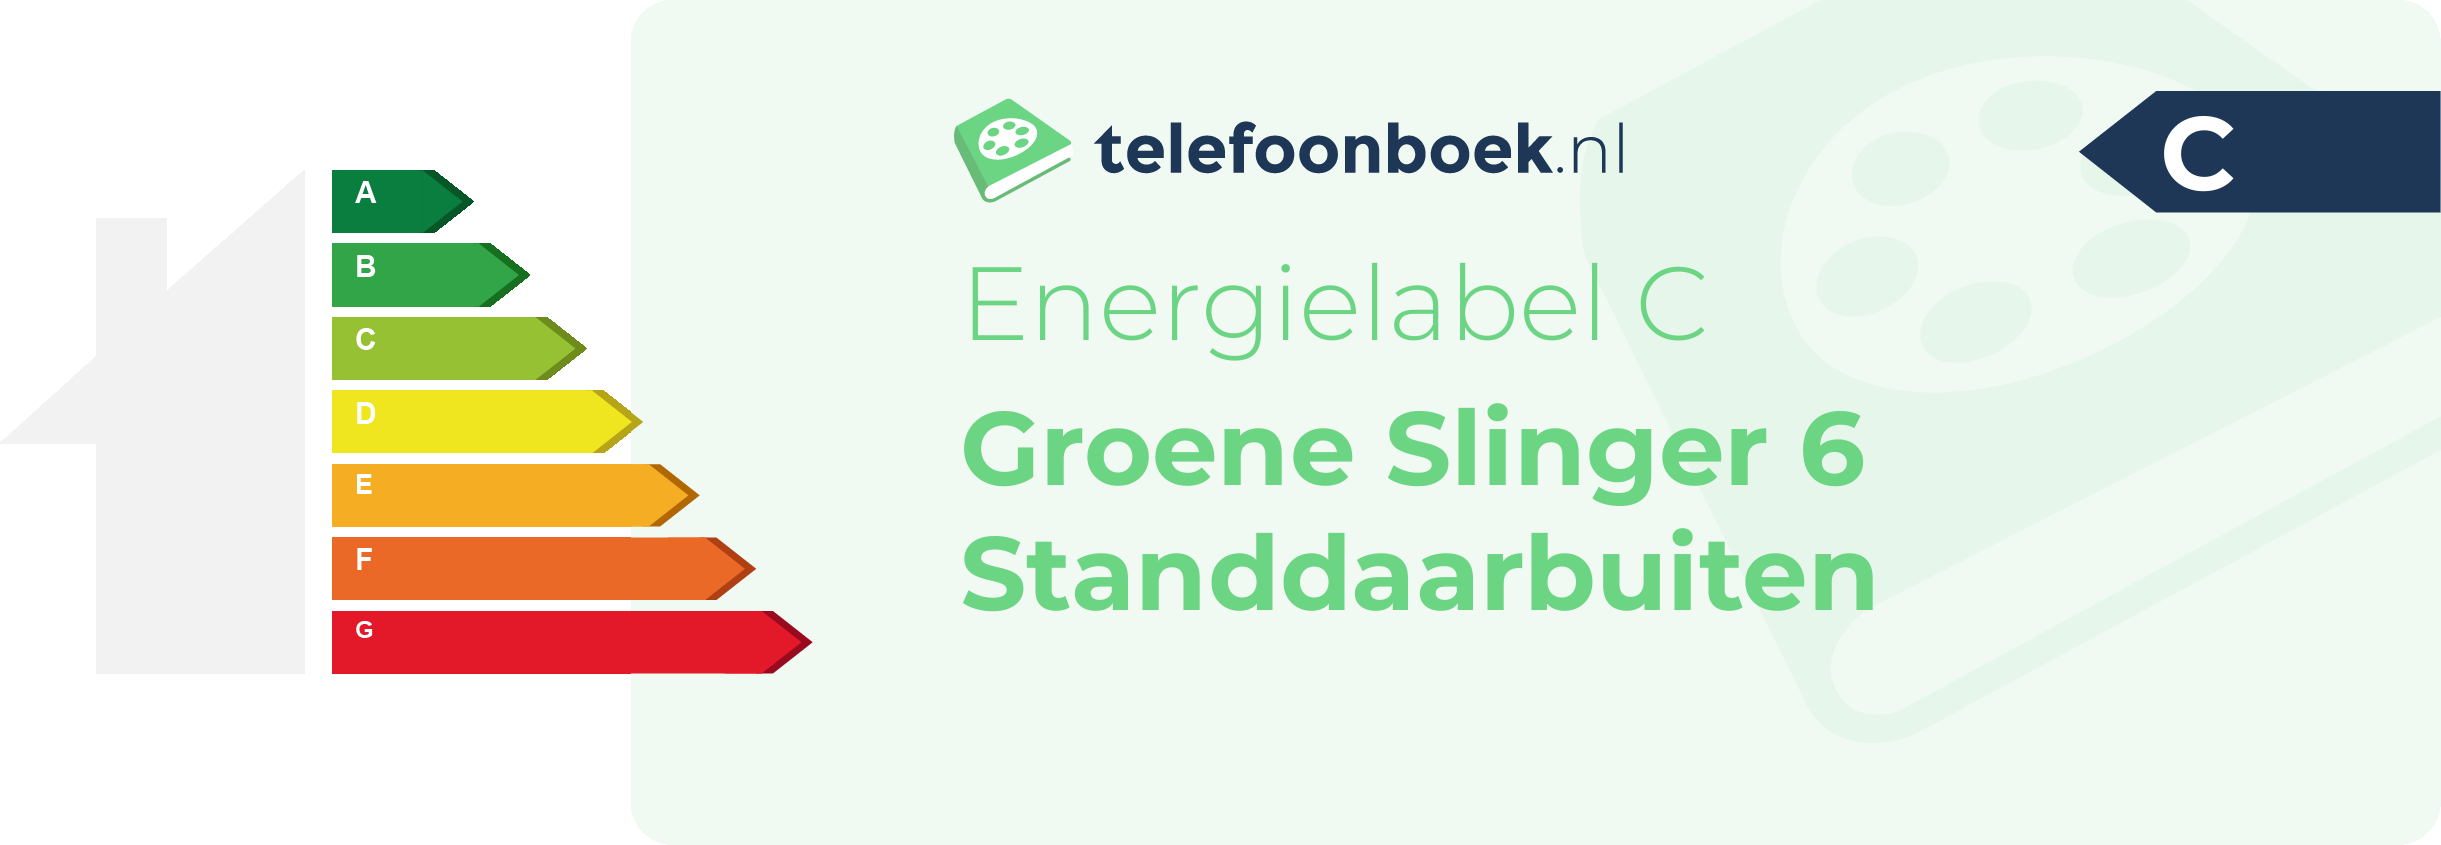 Energielabel Groene Slinger 6 Standdaarbuiten